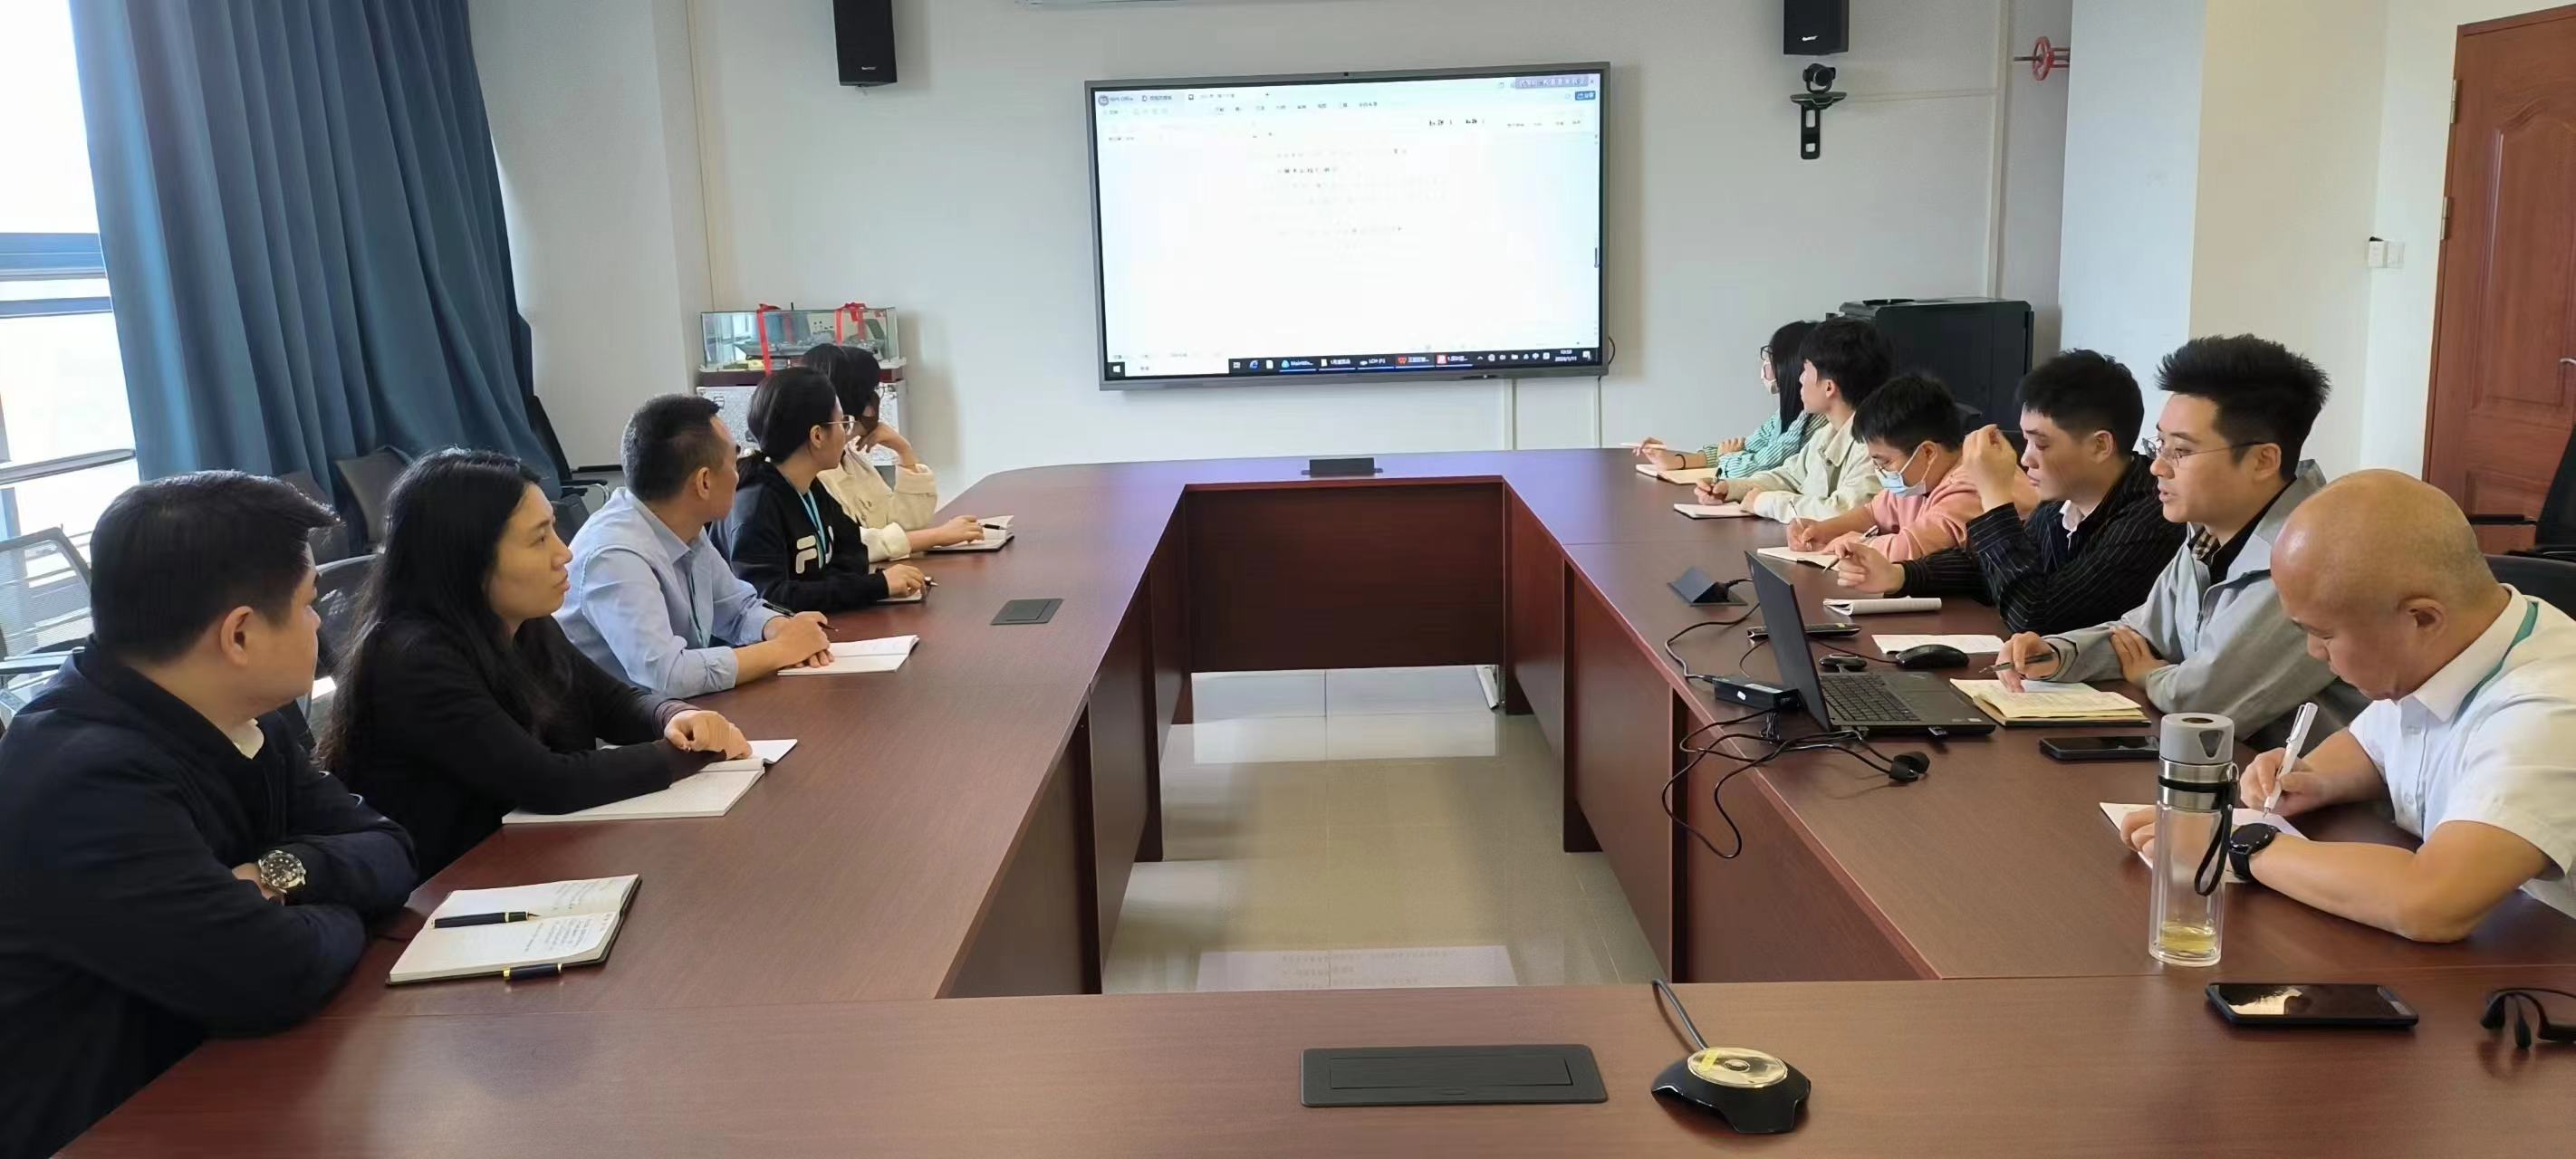 海南空管分局三亚区域管制中心开展管制员英语能力提升研讨会